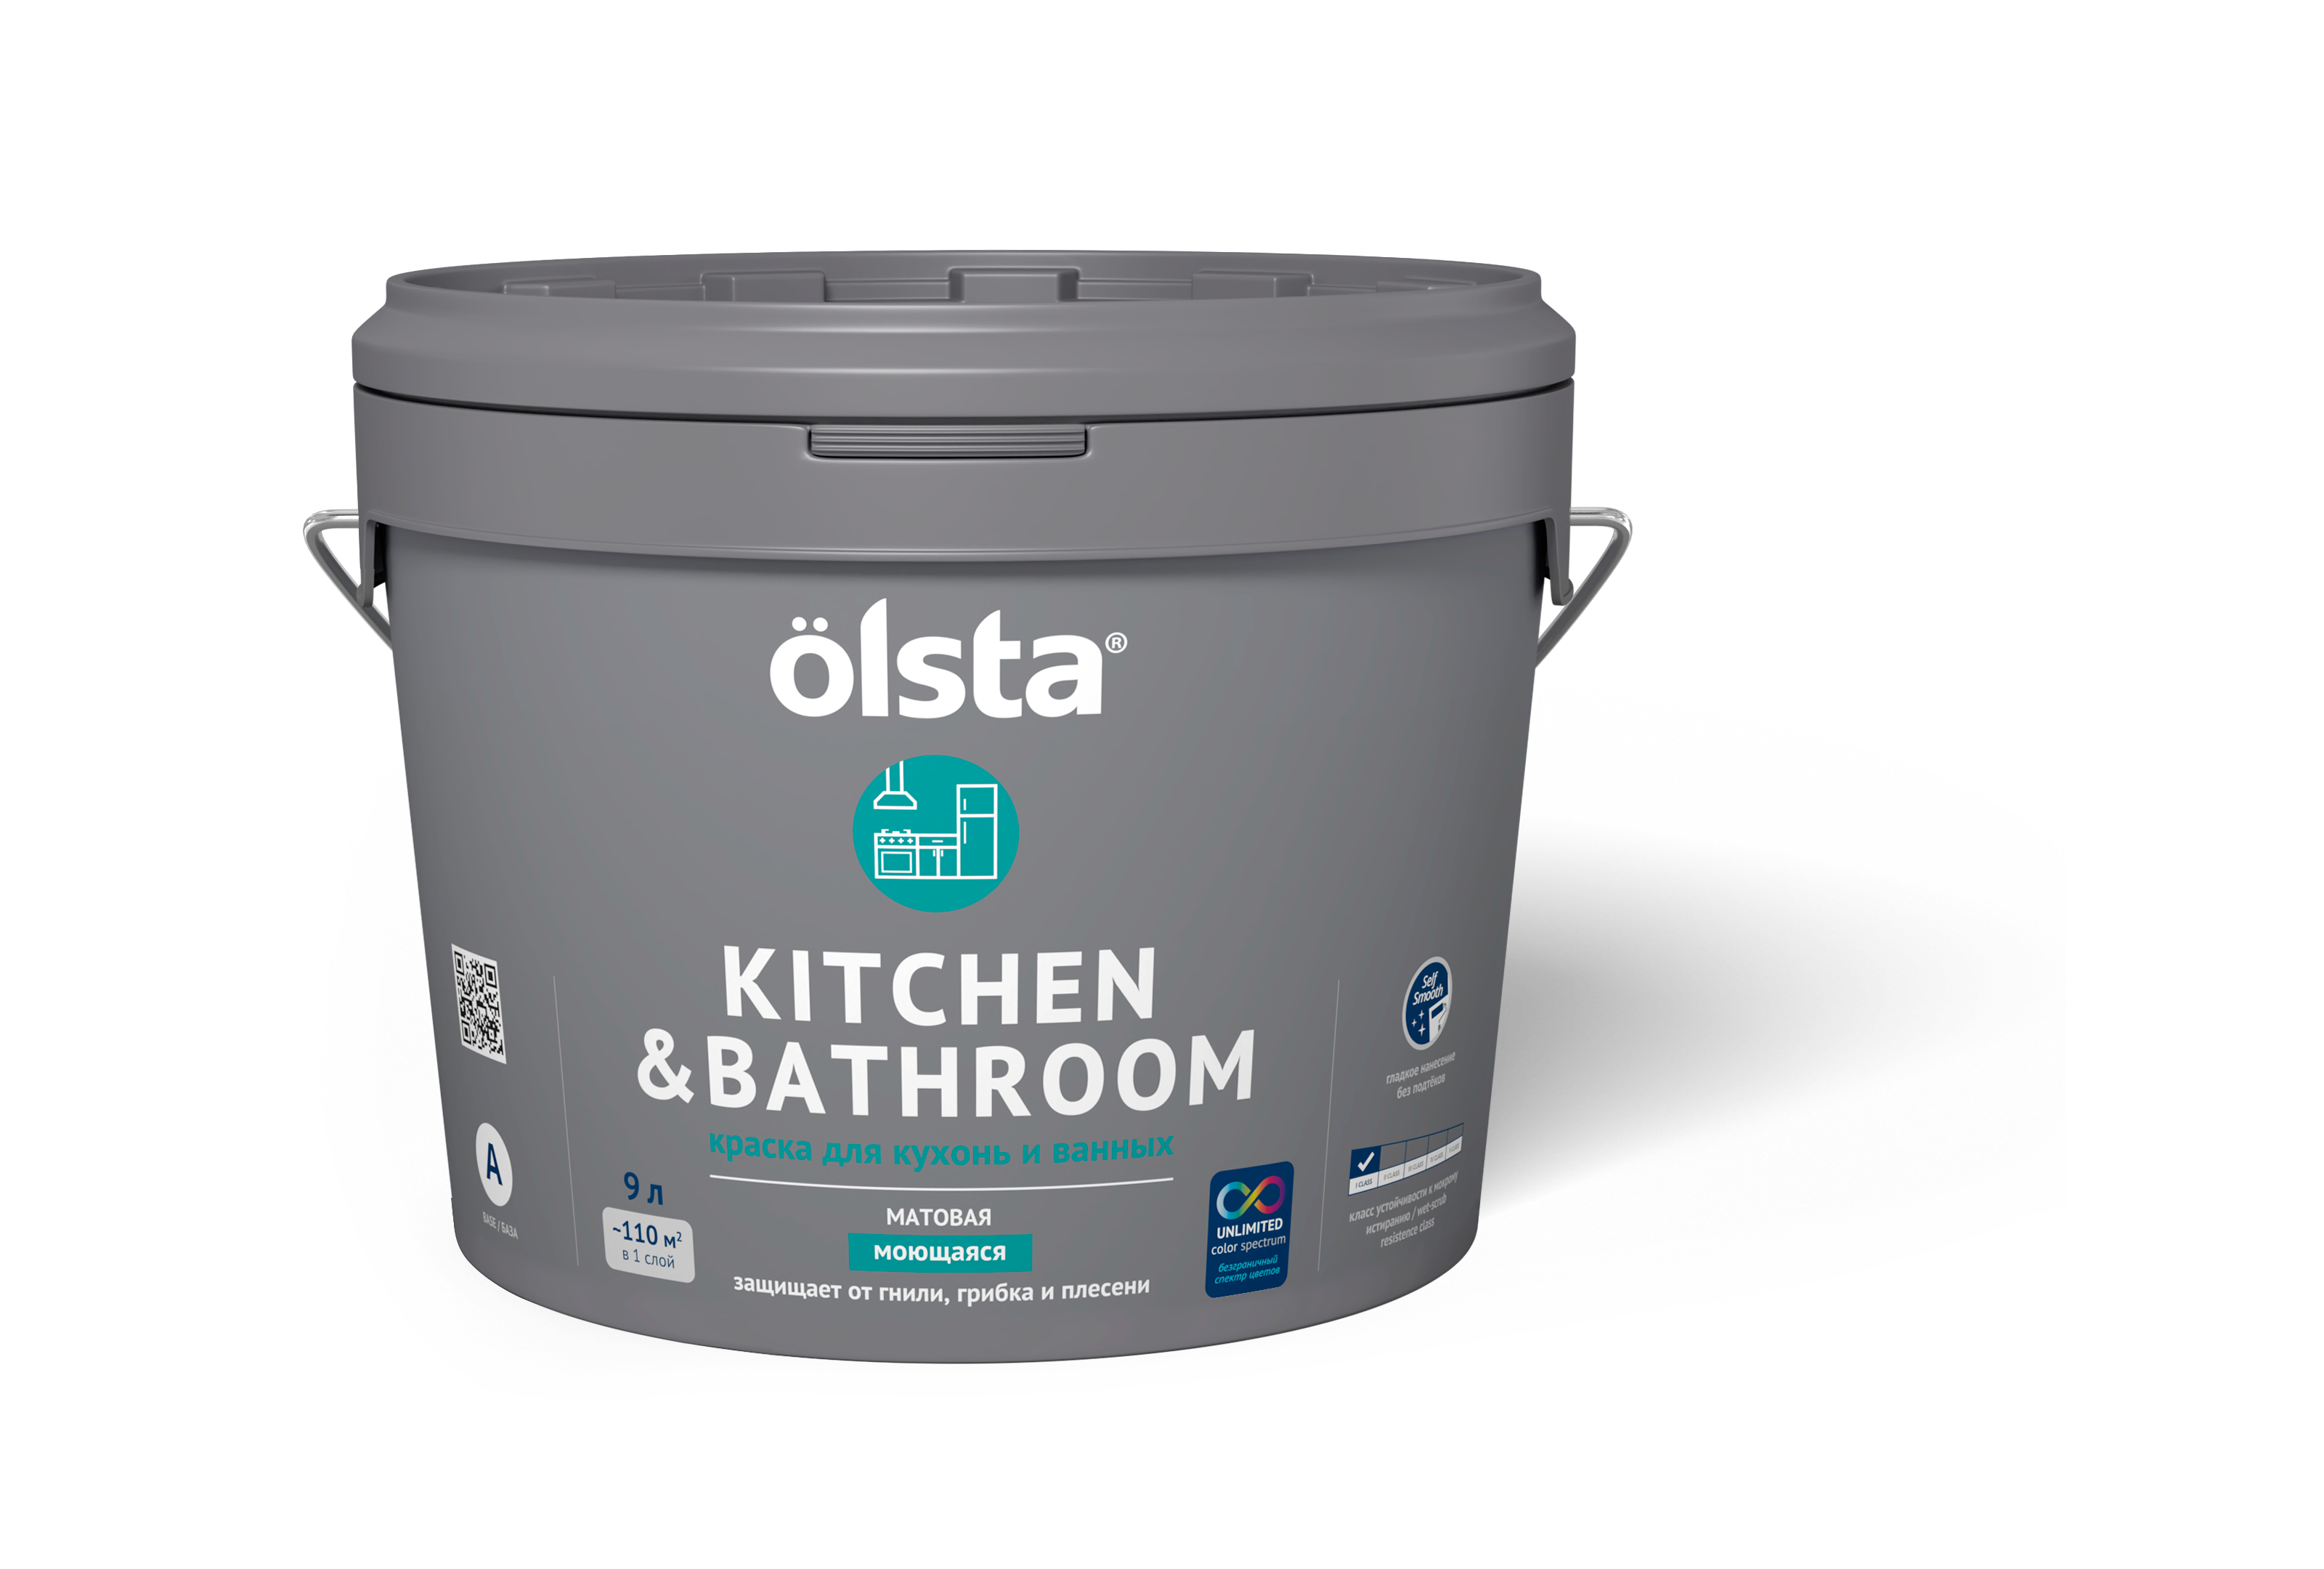 краска для кухонь и ванных olsta kitchen Краска для кухонь и ванных Olsta Kitchen&bathroom База A 9,0 л